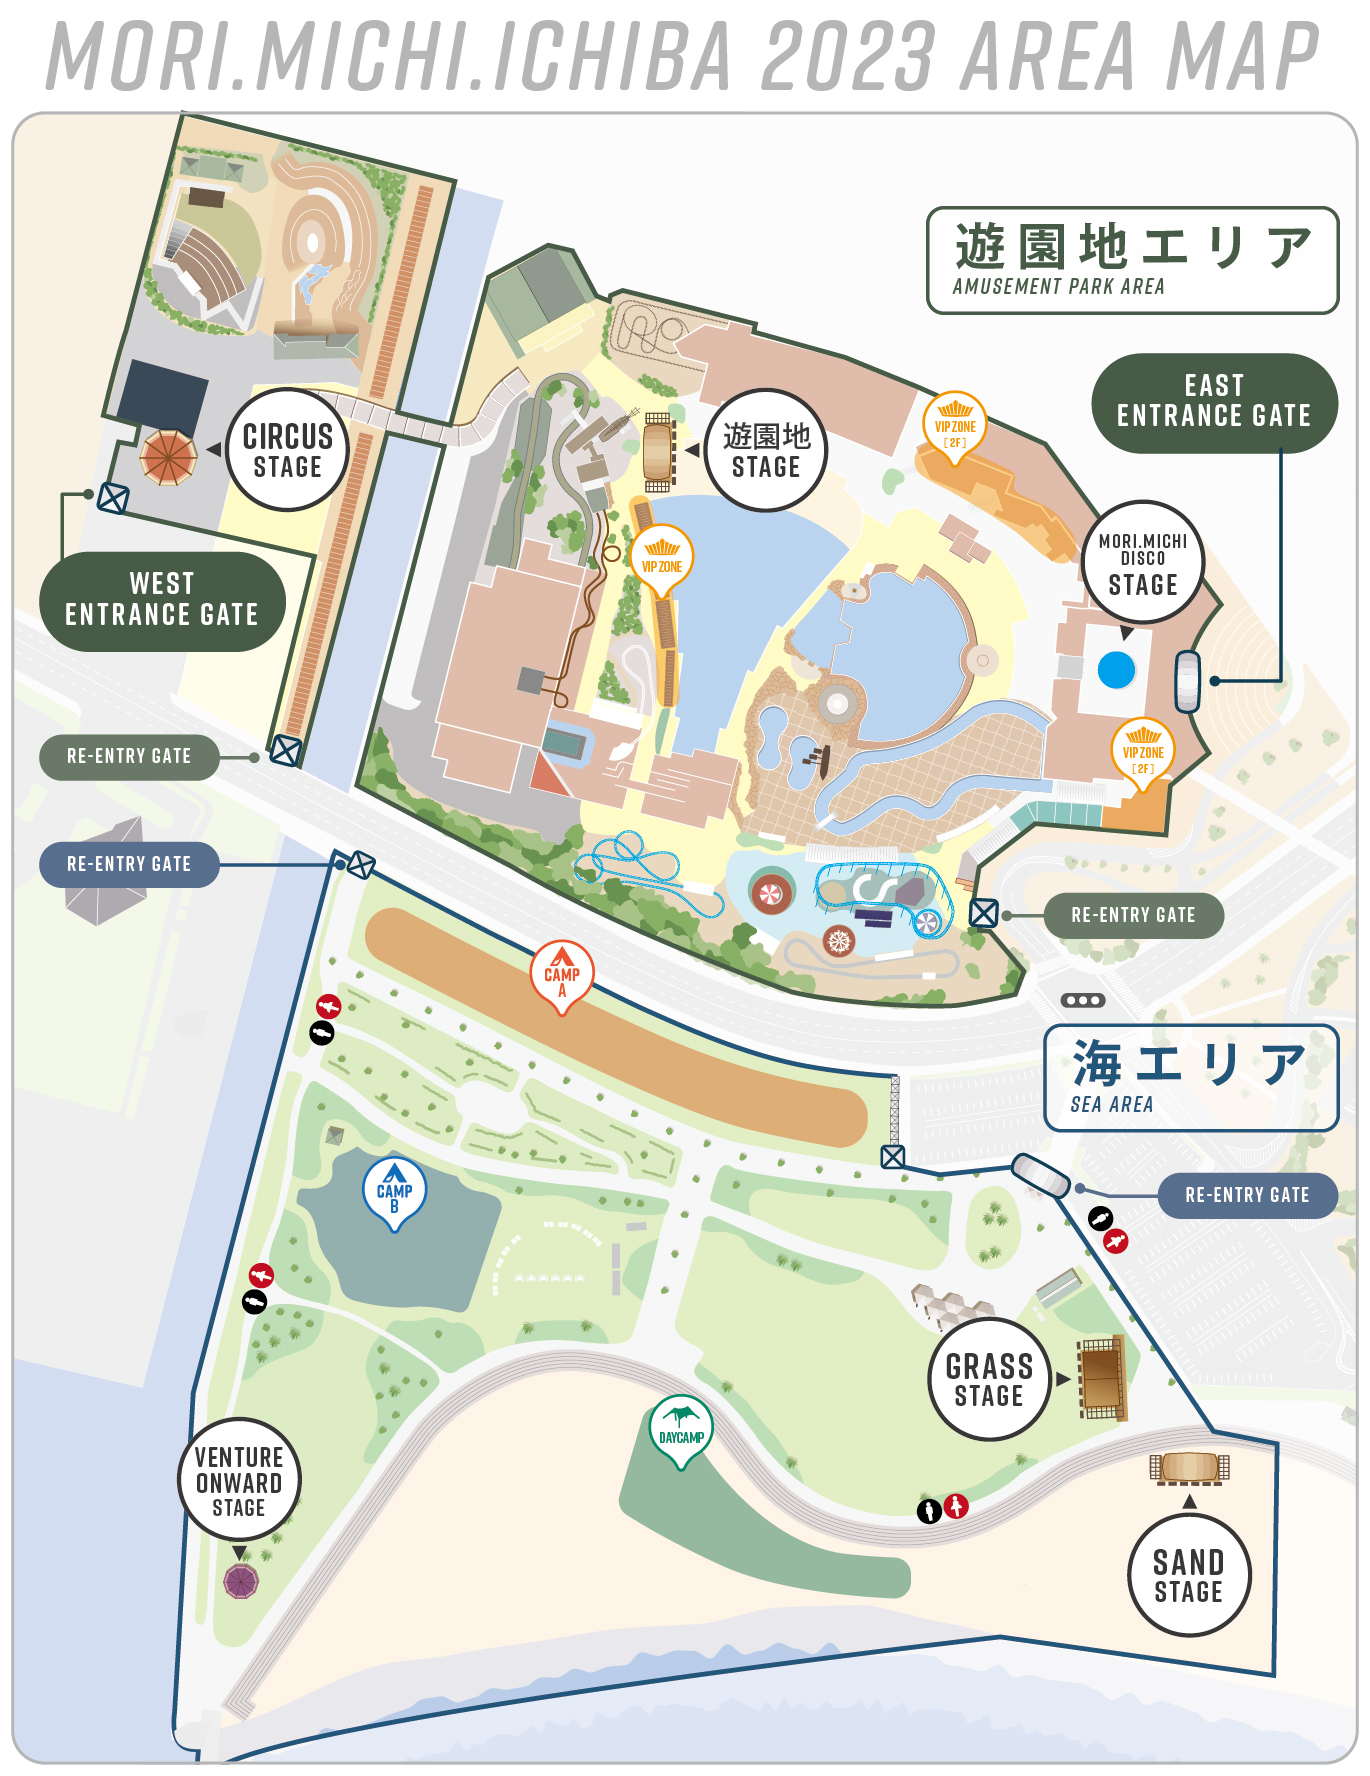 キャンプ/VIP ZONE - 森、道、市場2023